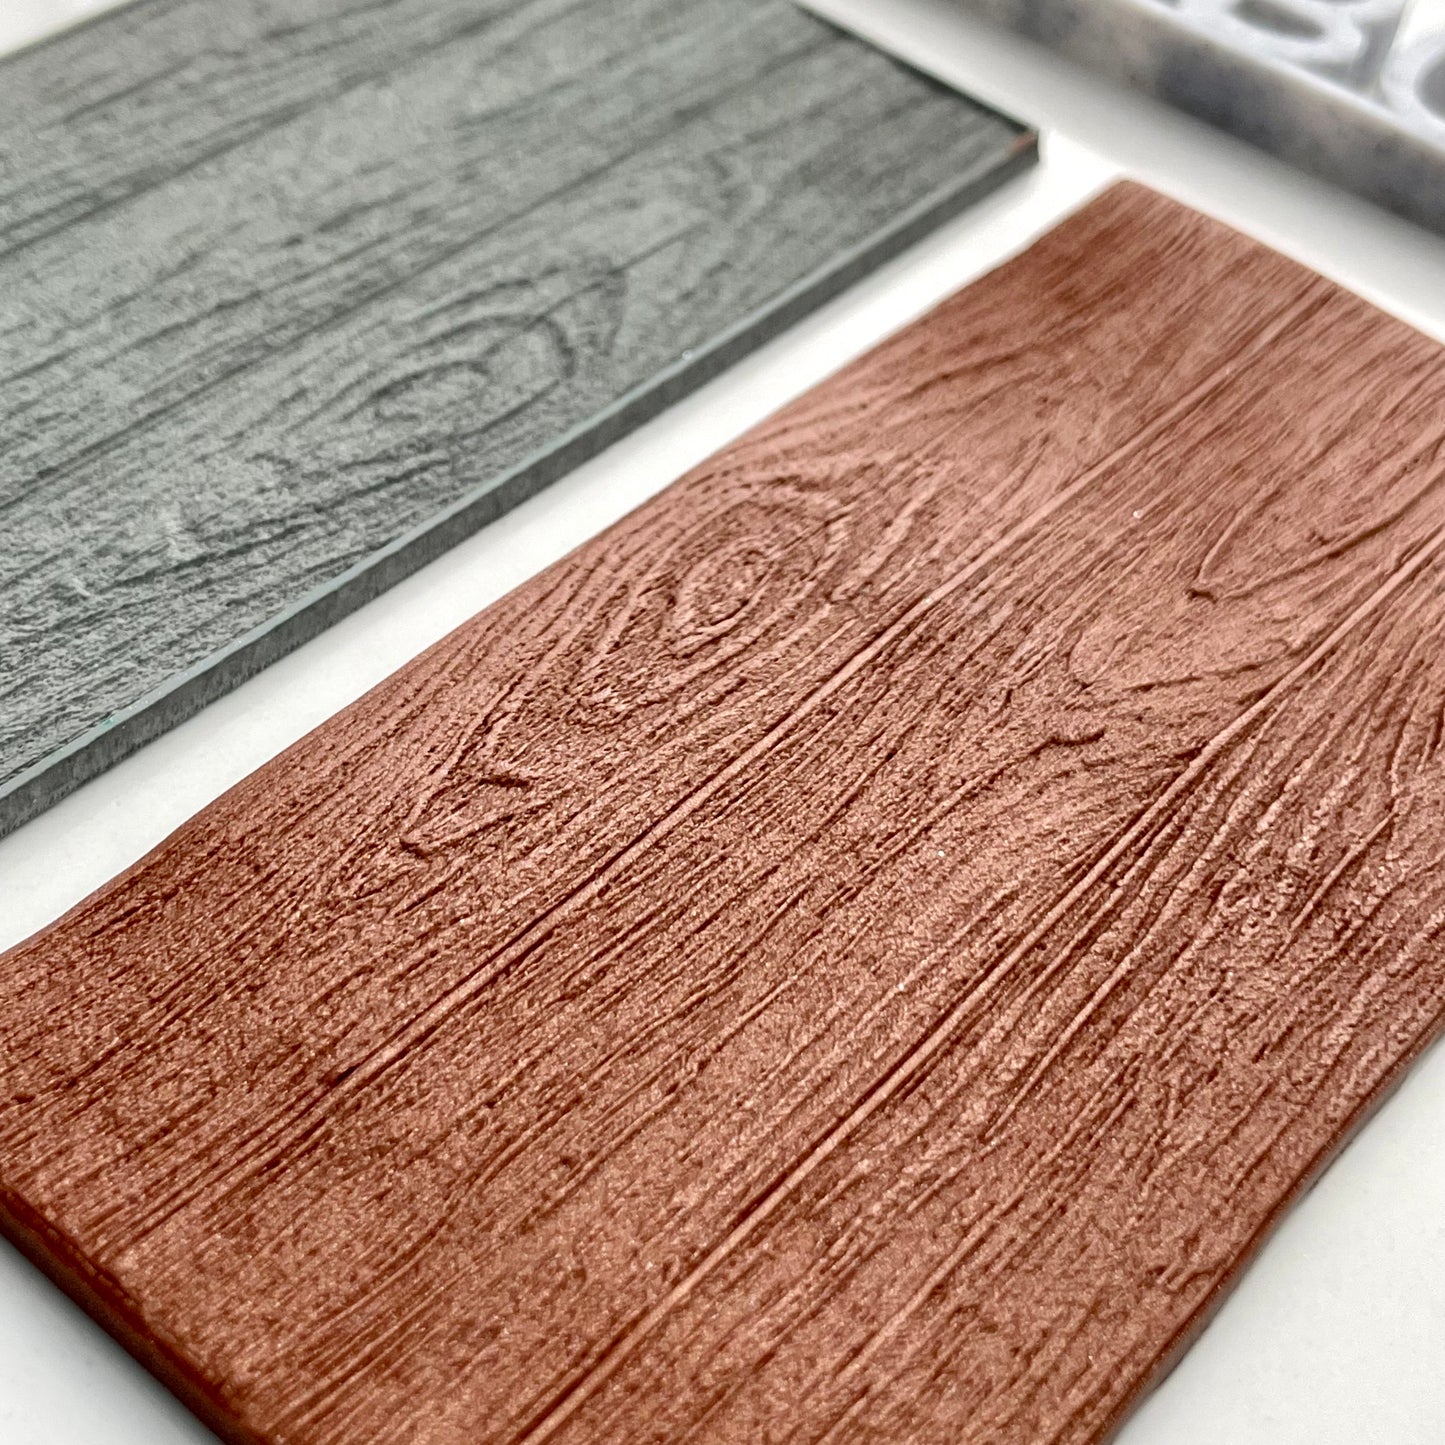 Wood grain texture mat